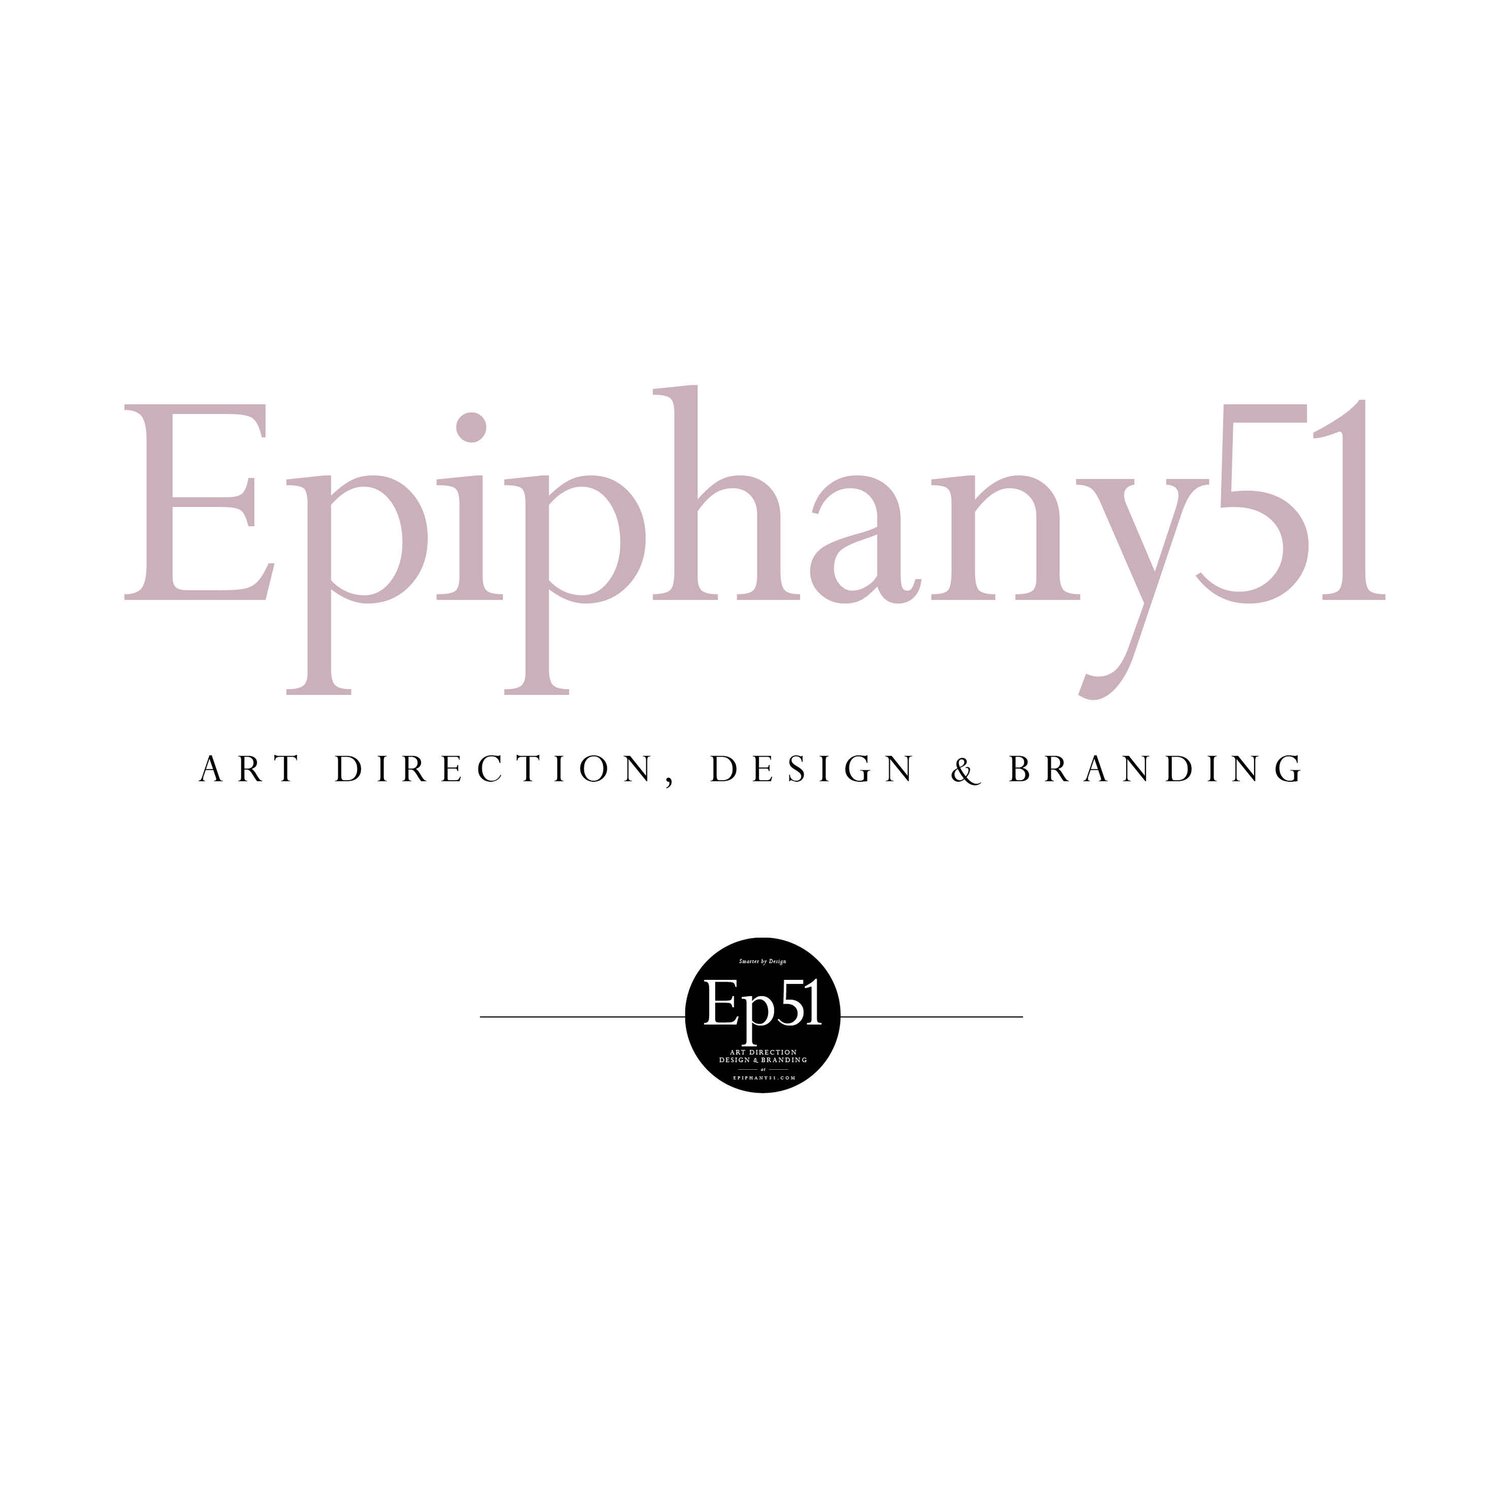 Epiphany51